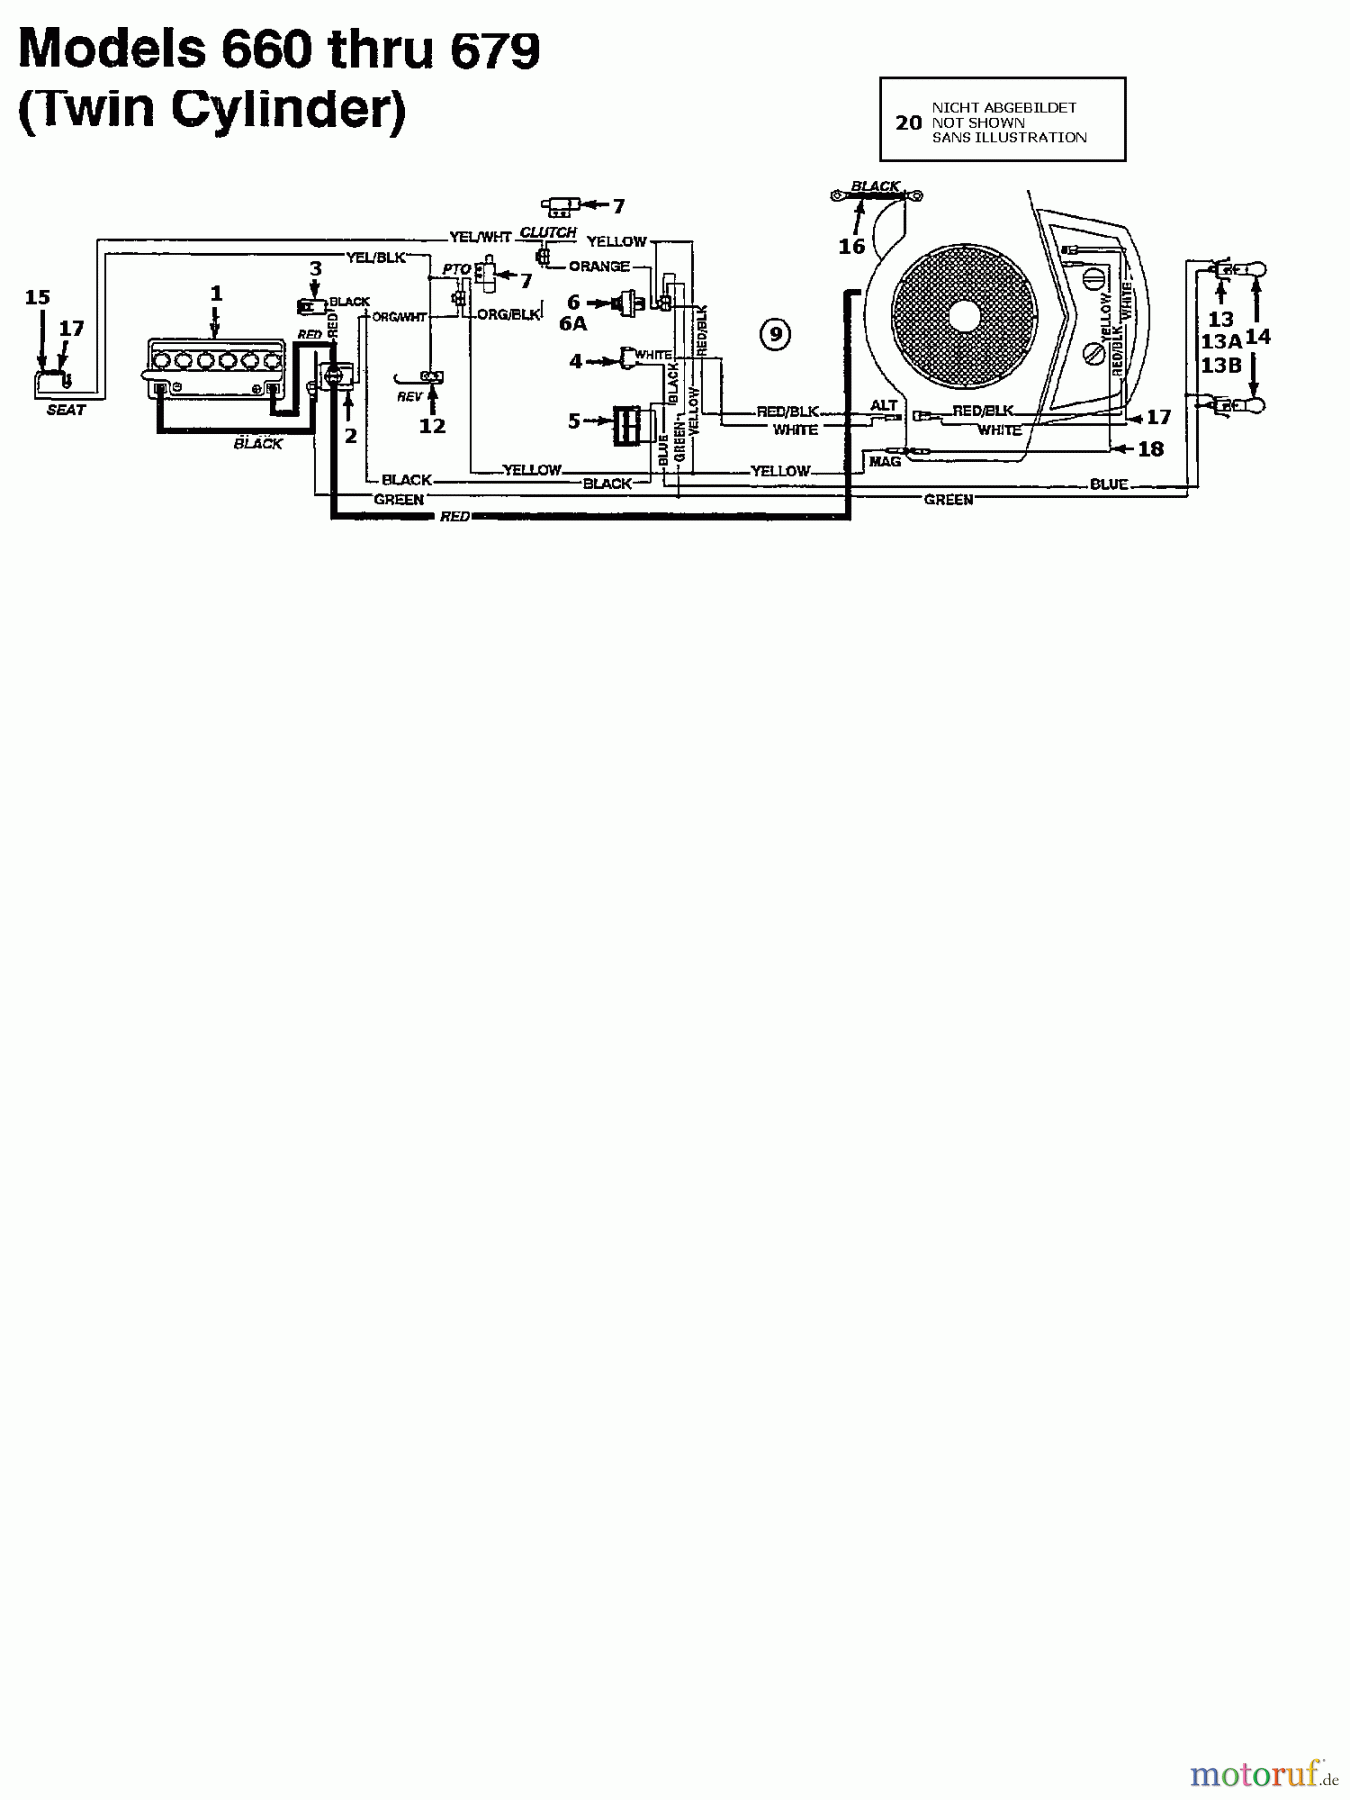  Agria Tracteurs de pelouse 4600/107 134S679G609  (1994) Plan électrique 2 cylindre